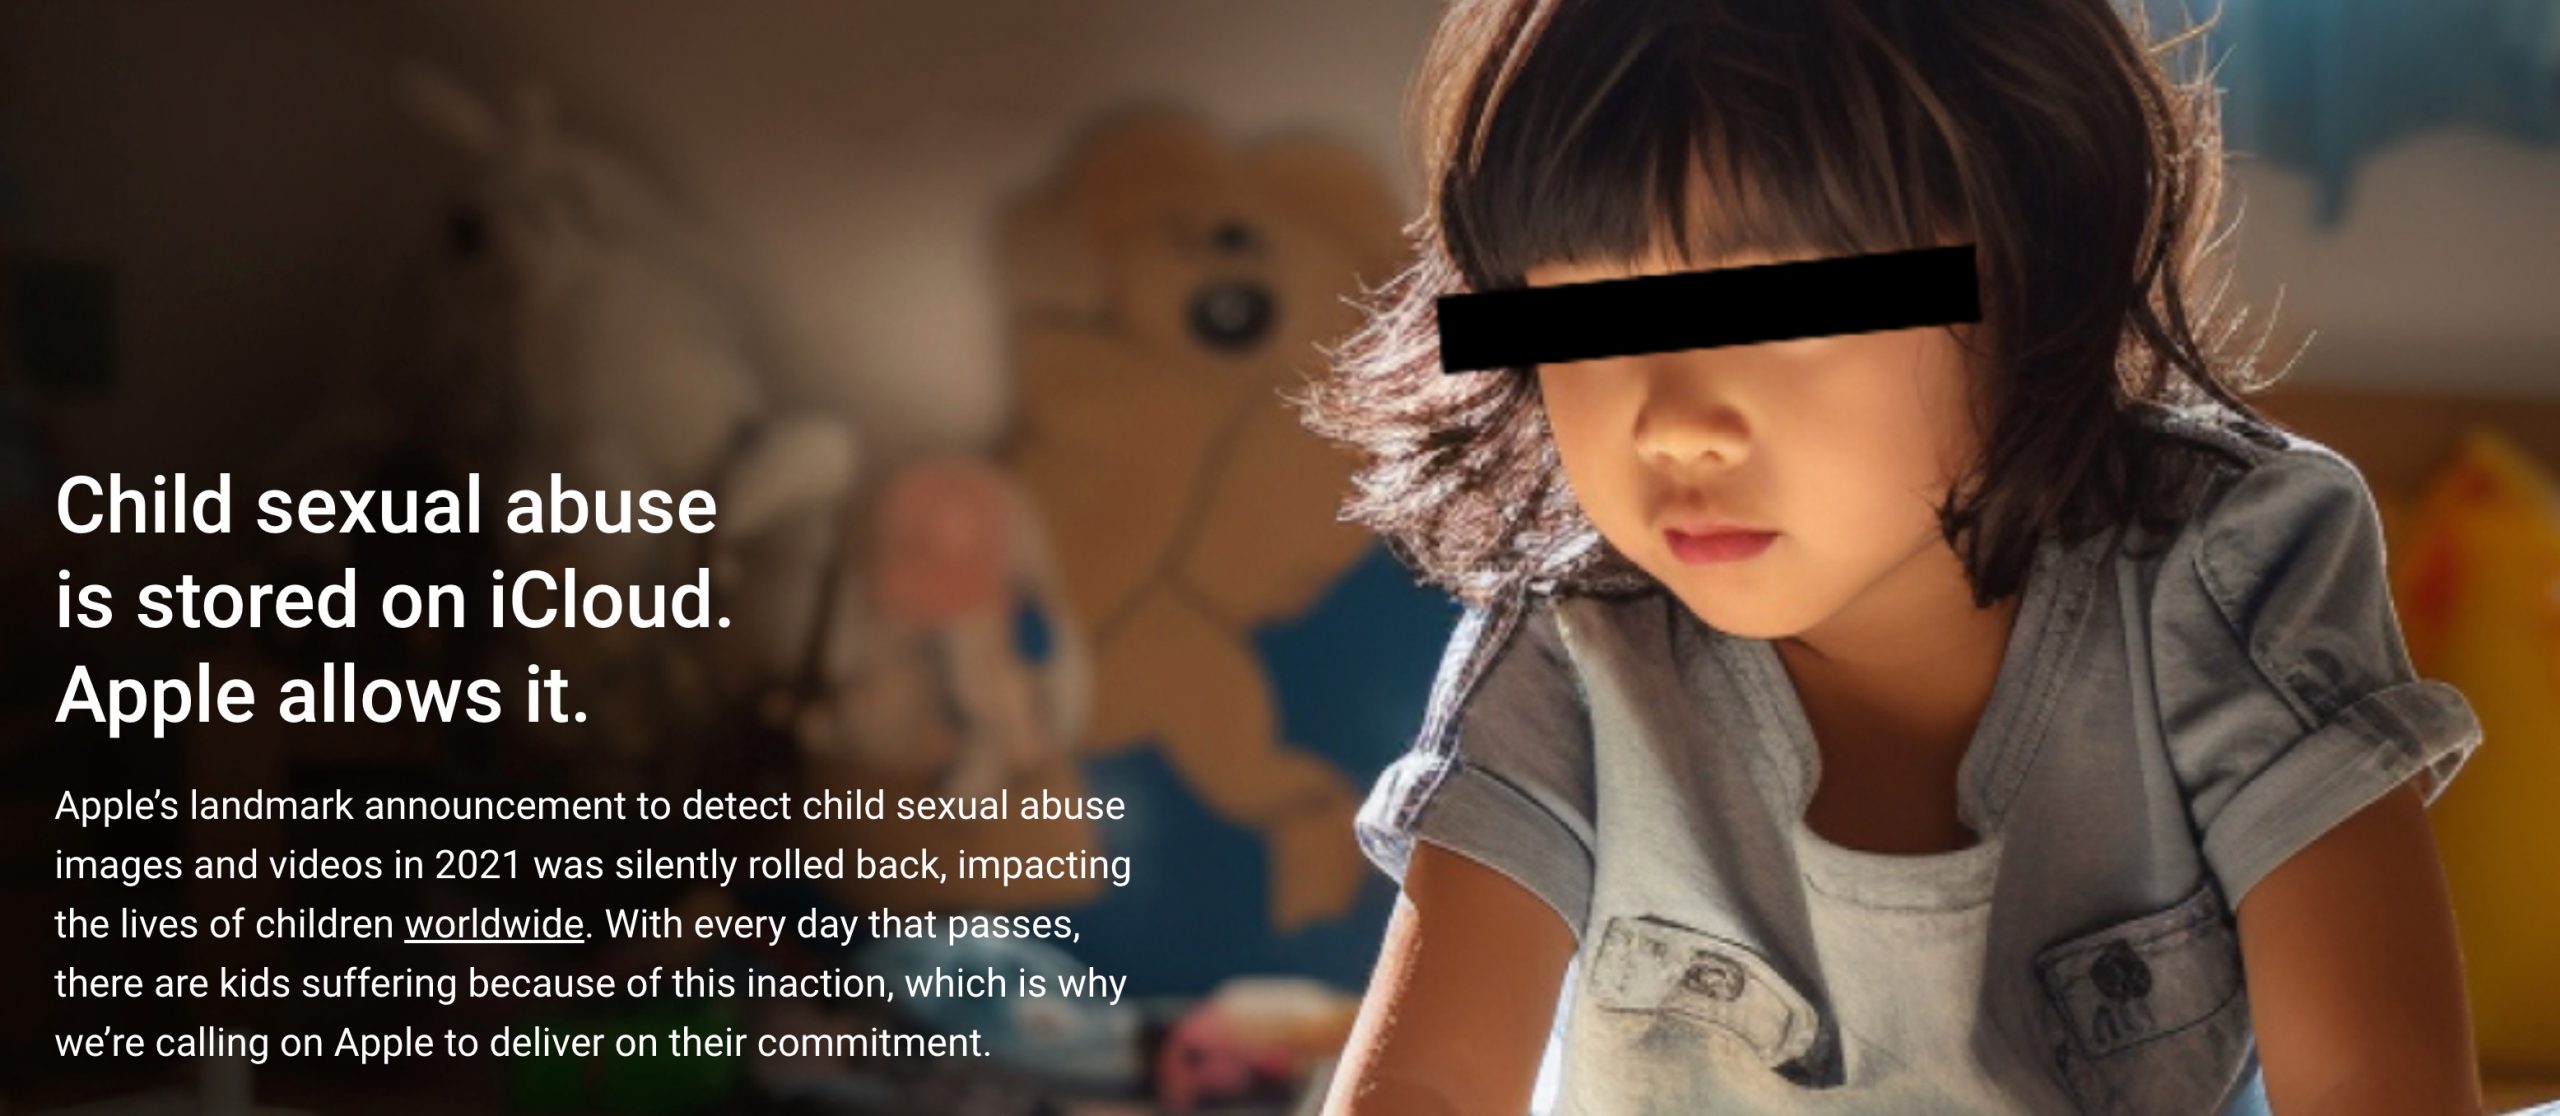 Acusan a Apple de permitir imágenes de abusos infantiles en iCloud